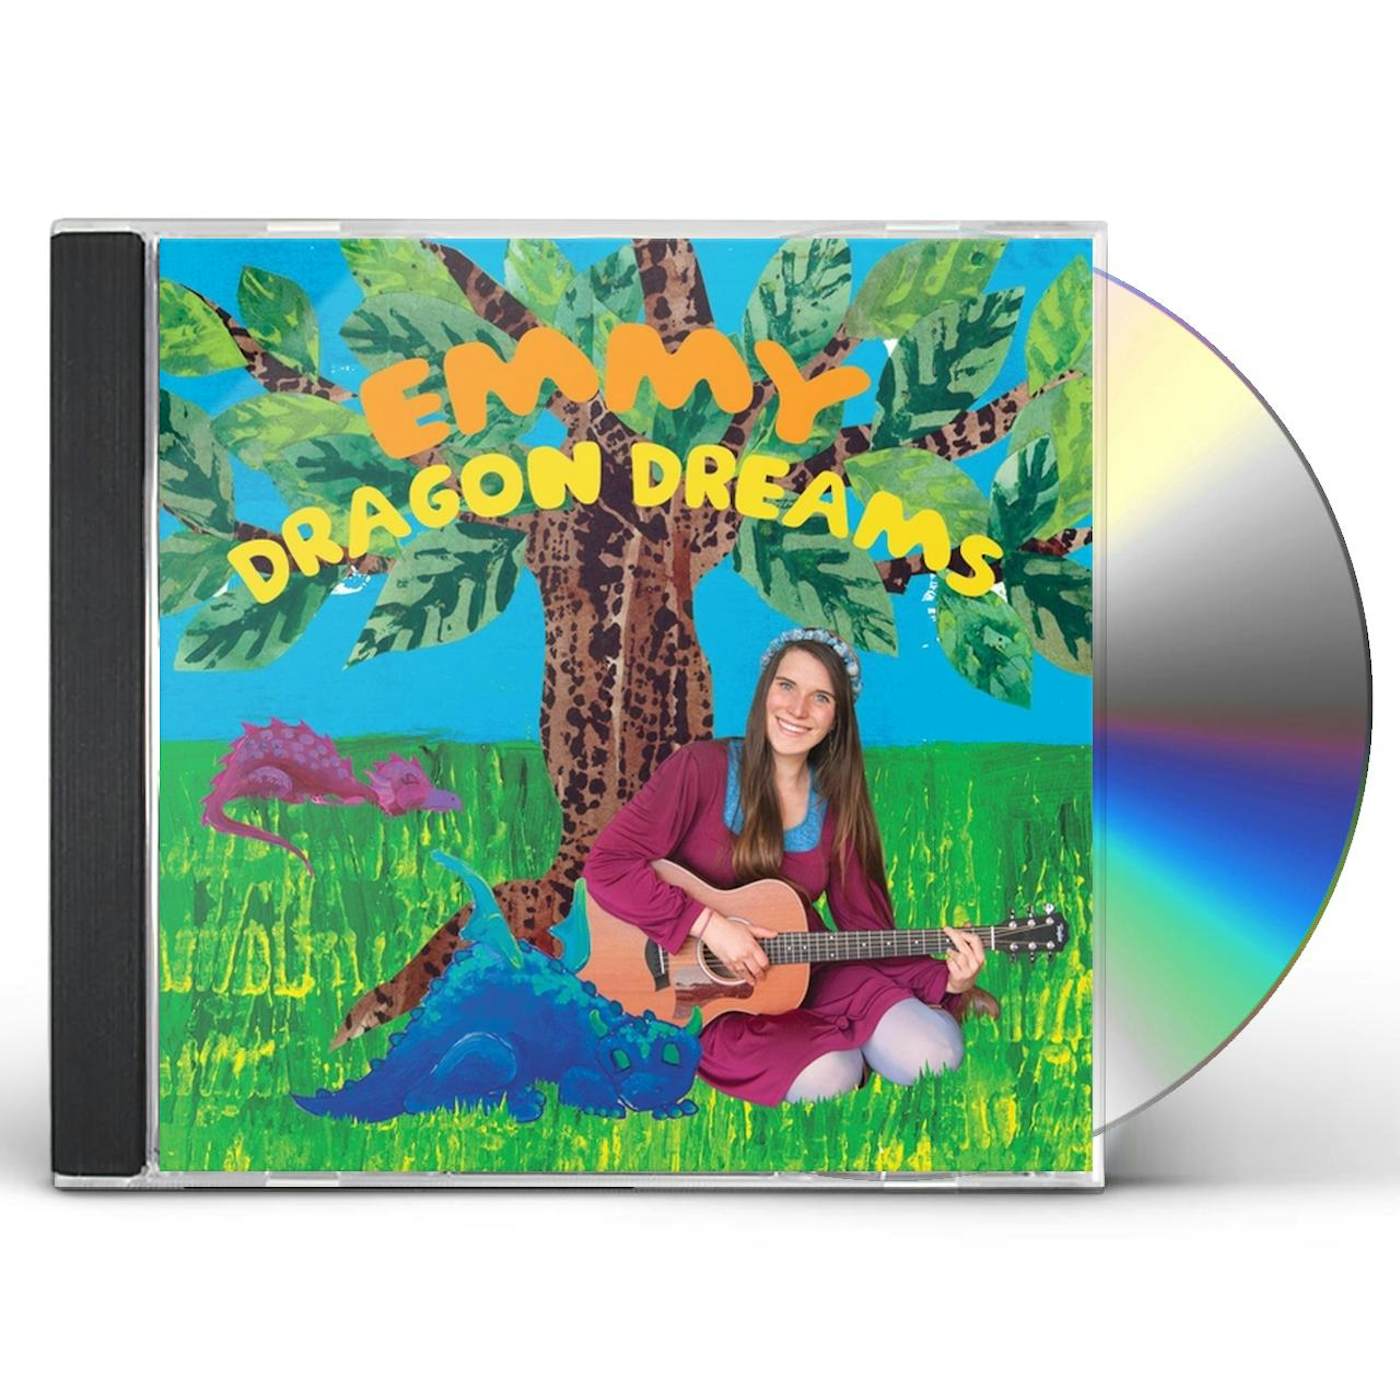 Emmy DRAGON DREAMS CD